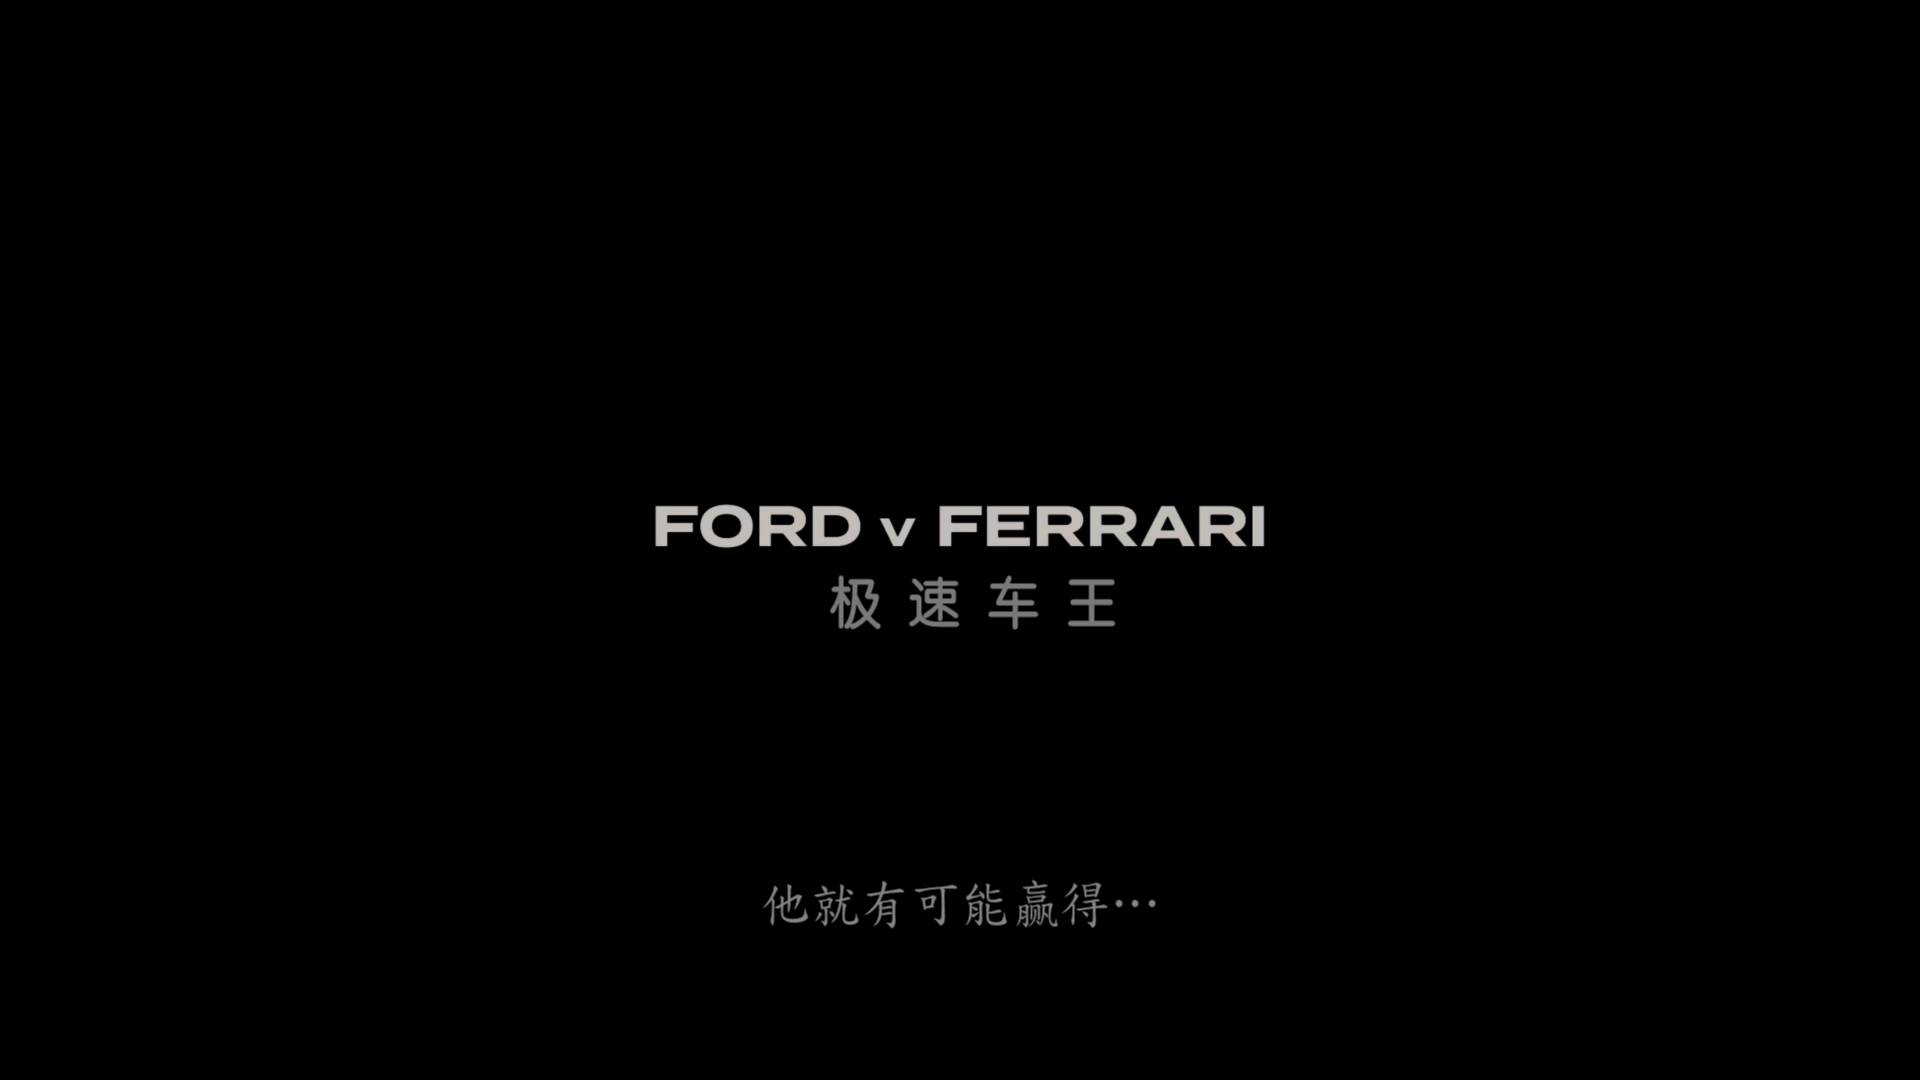 极速车王[DIY简繁双语字幕] 4K UHD原盘 [自看版] Ford v Ferrari 2019 2160p UHD Blu-ray HEVC Atmos-wezjh@OurBits     [51.86 GB ]-2.jpg